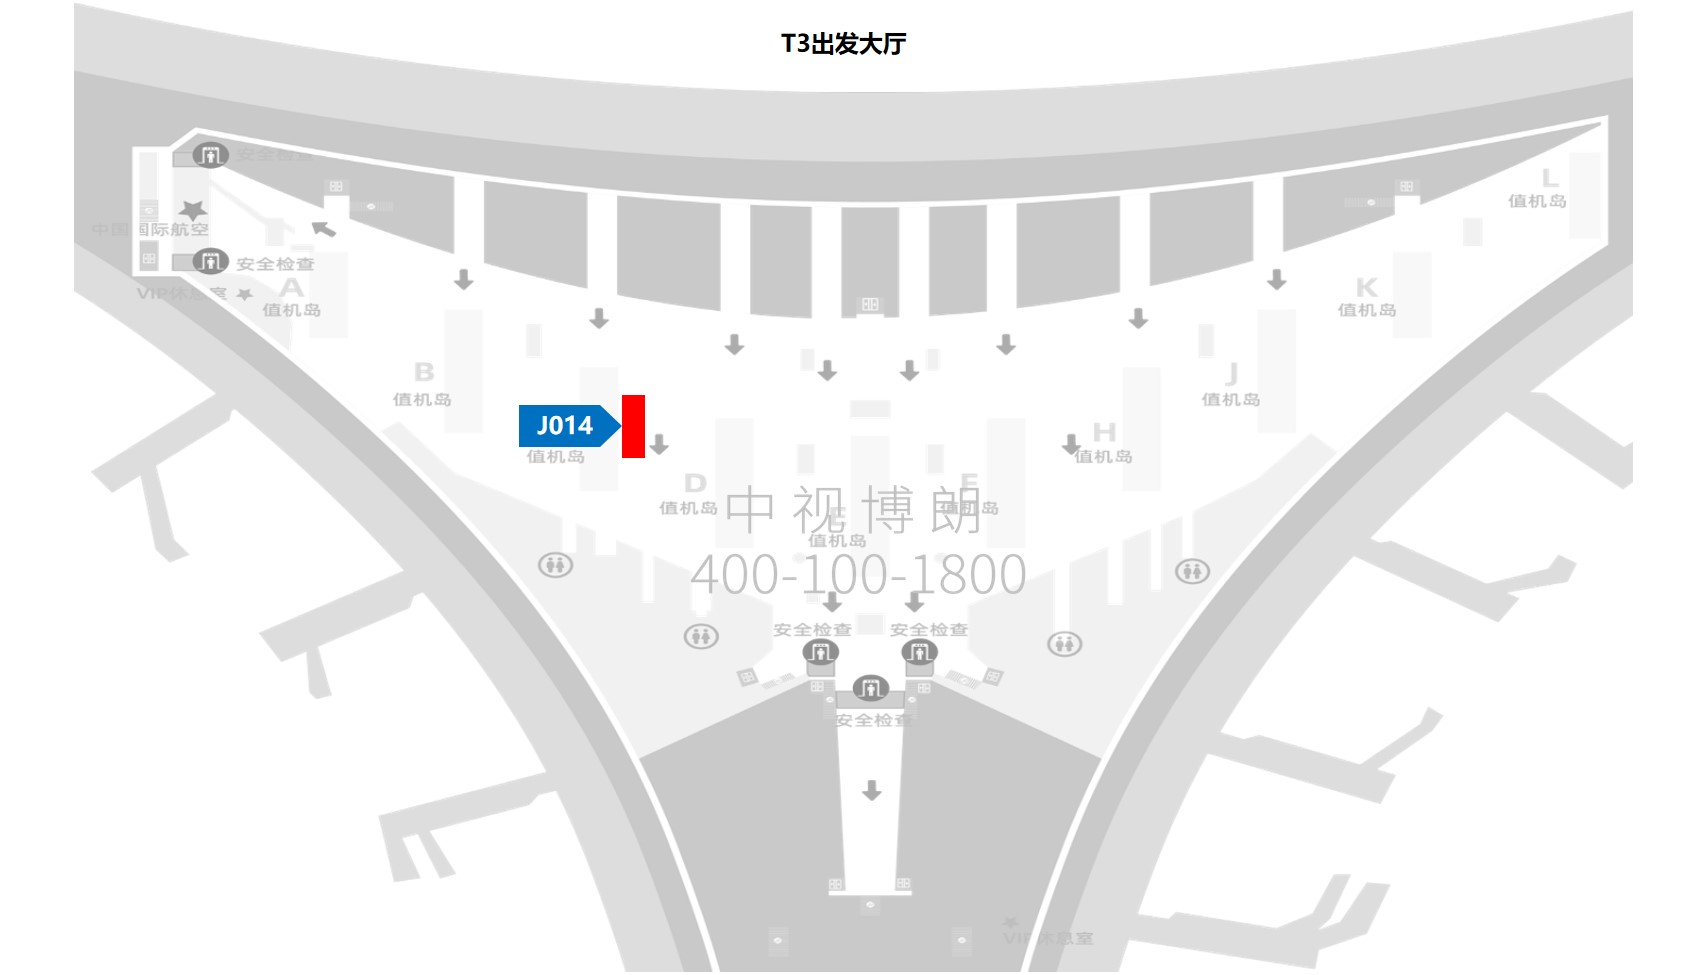 北京首都机场广告-T3出发大厅图腾灯箱J014位置图